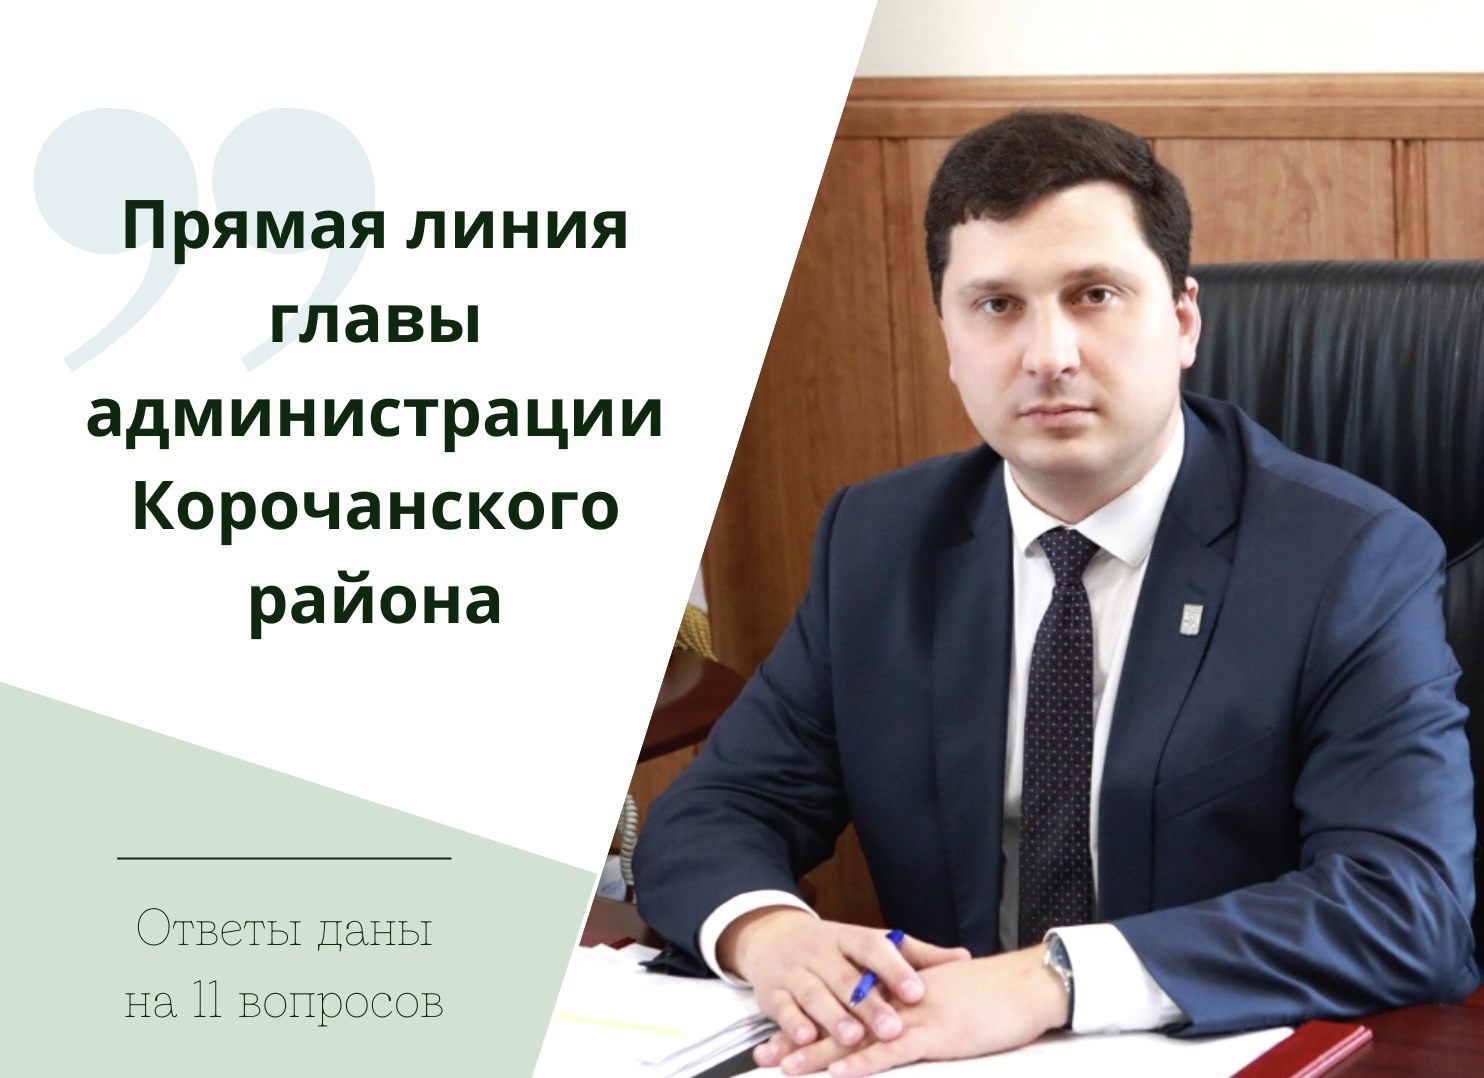 В ходе прямой линии главы администрации района Николая Нестерова были даны разъяснения на 11 вопросов, поступившие от пользователей социальных сетей